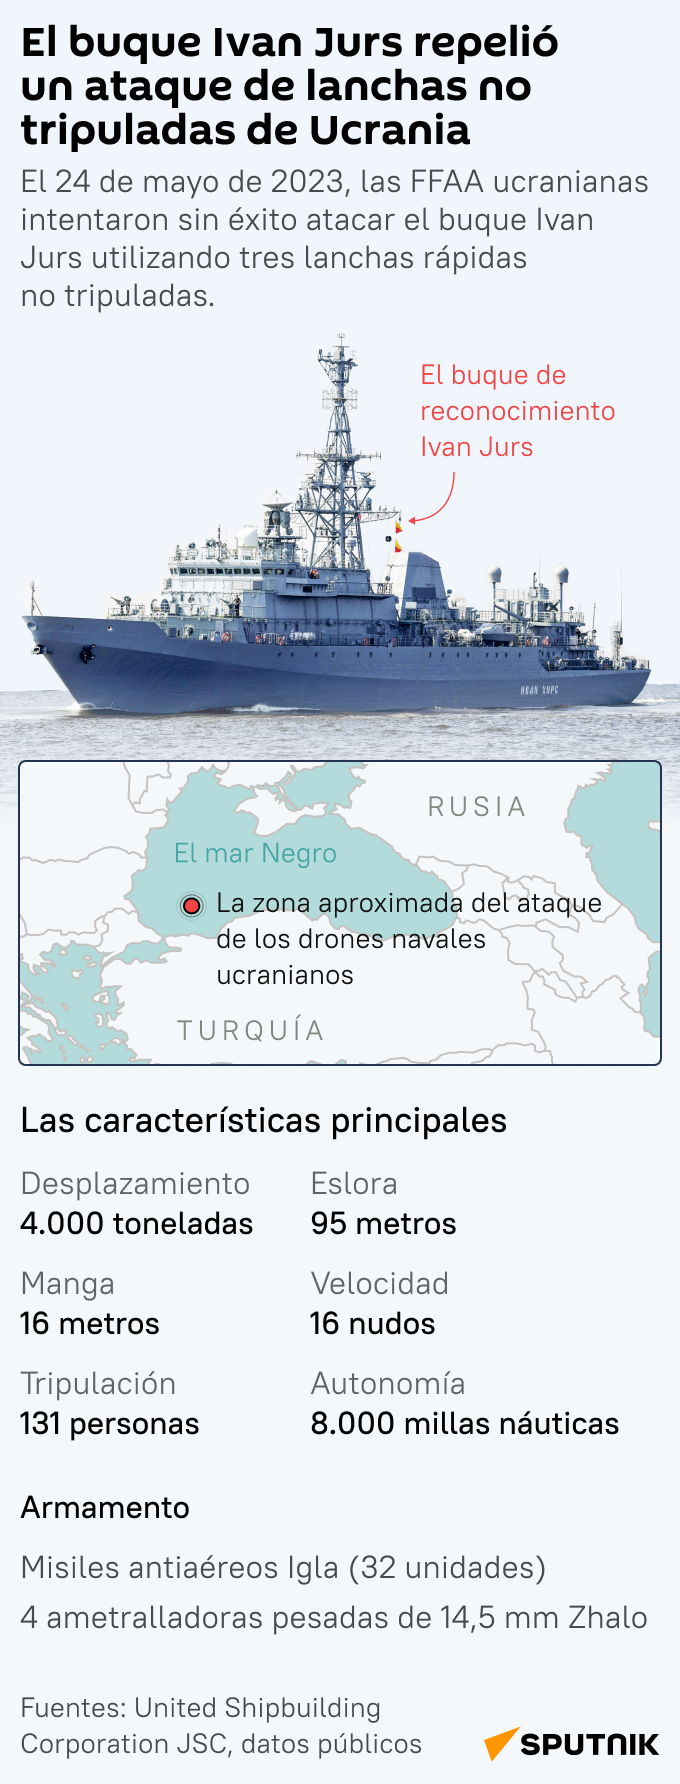 El barco militar ruso Iván Jurs repela ataque de lanchas-kamikazes ucranianas en el mar Negro - Sputnik Mundo